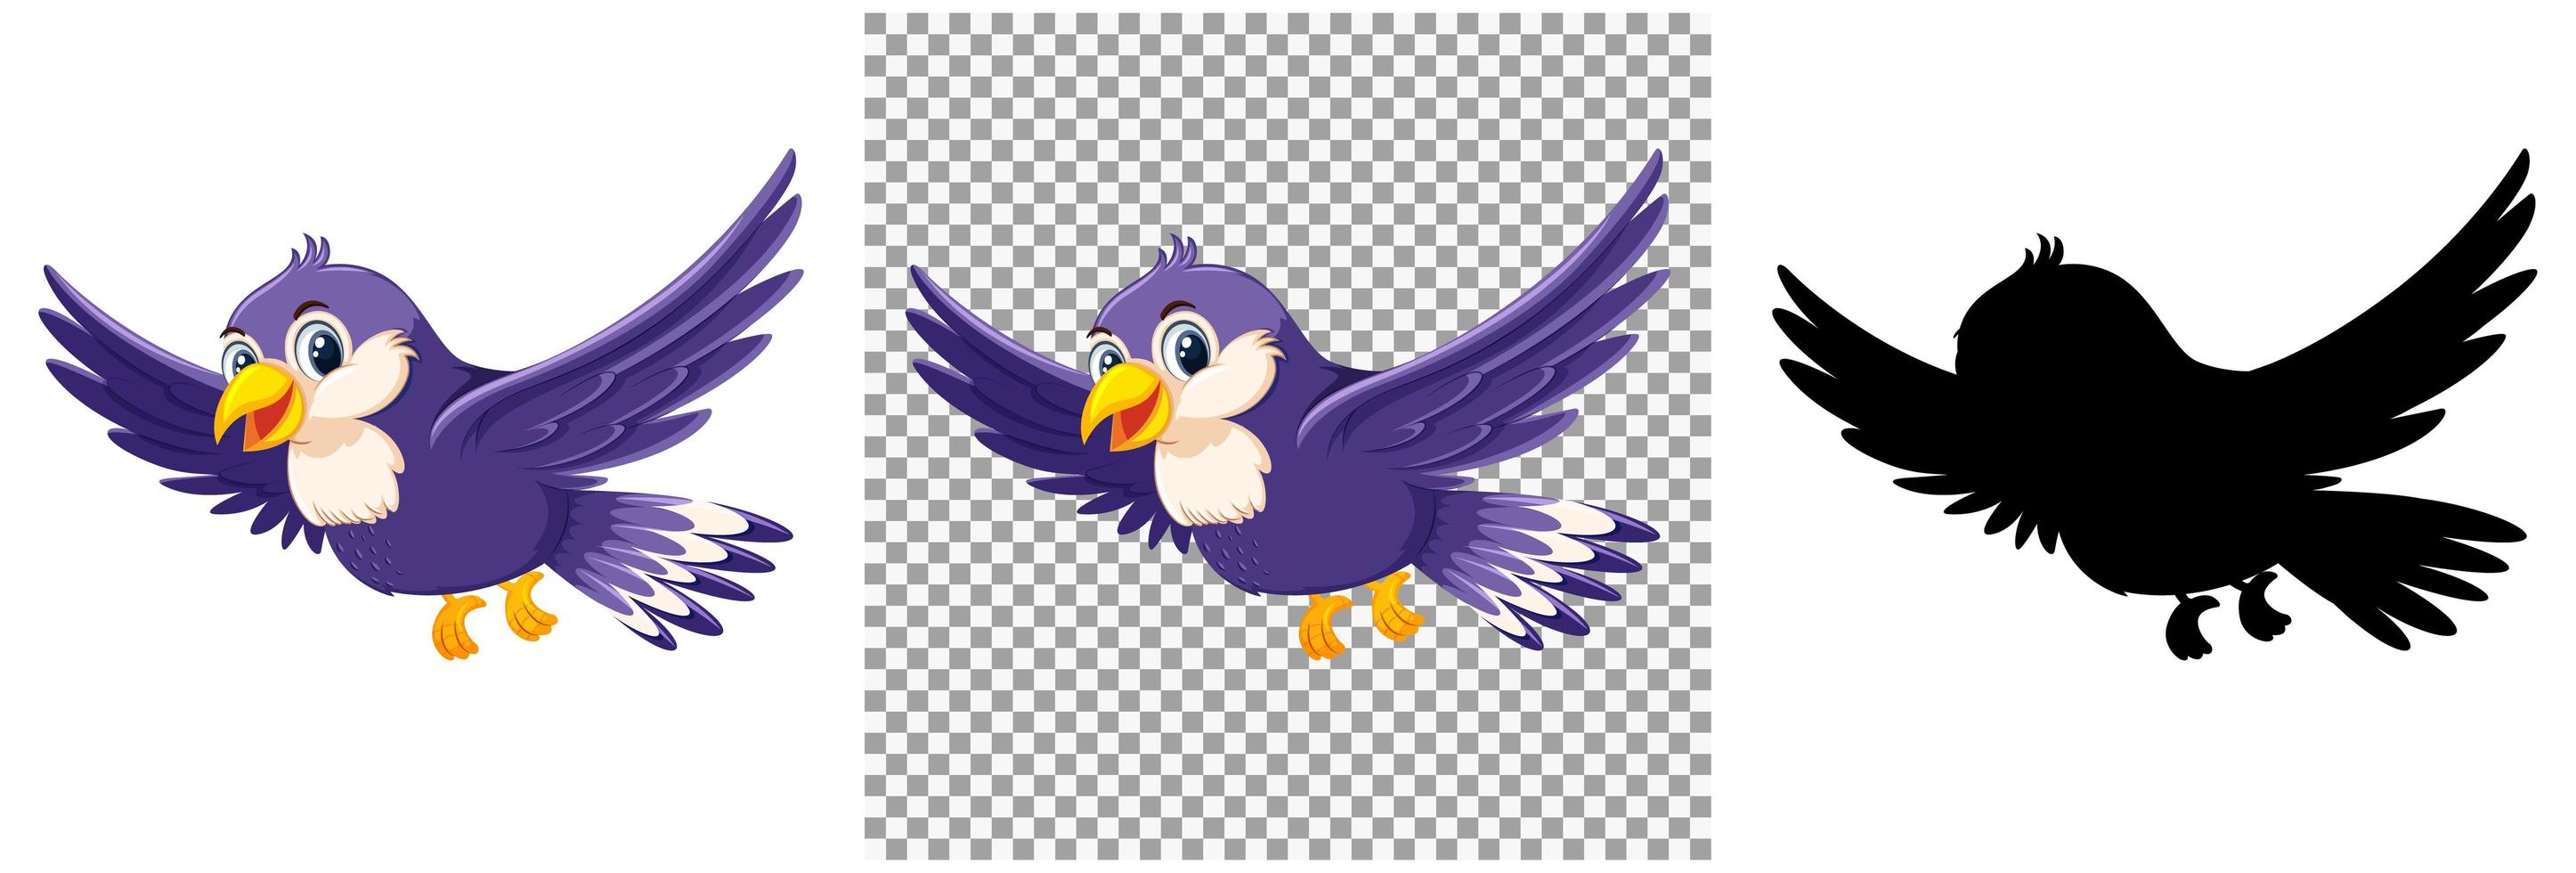 simpatico personaggio dei cartoni animati di uccello viola vettore